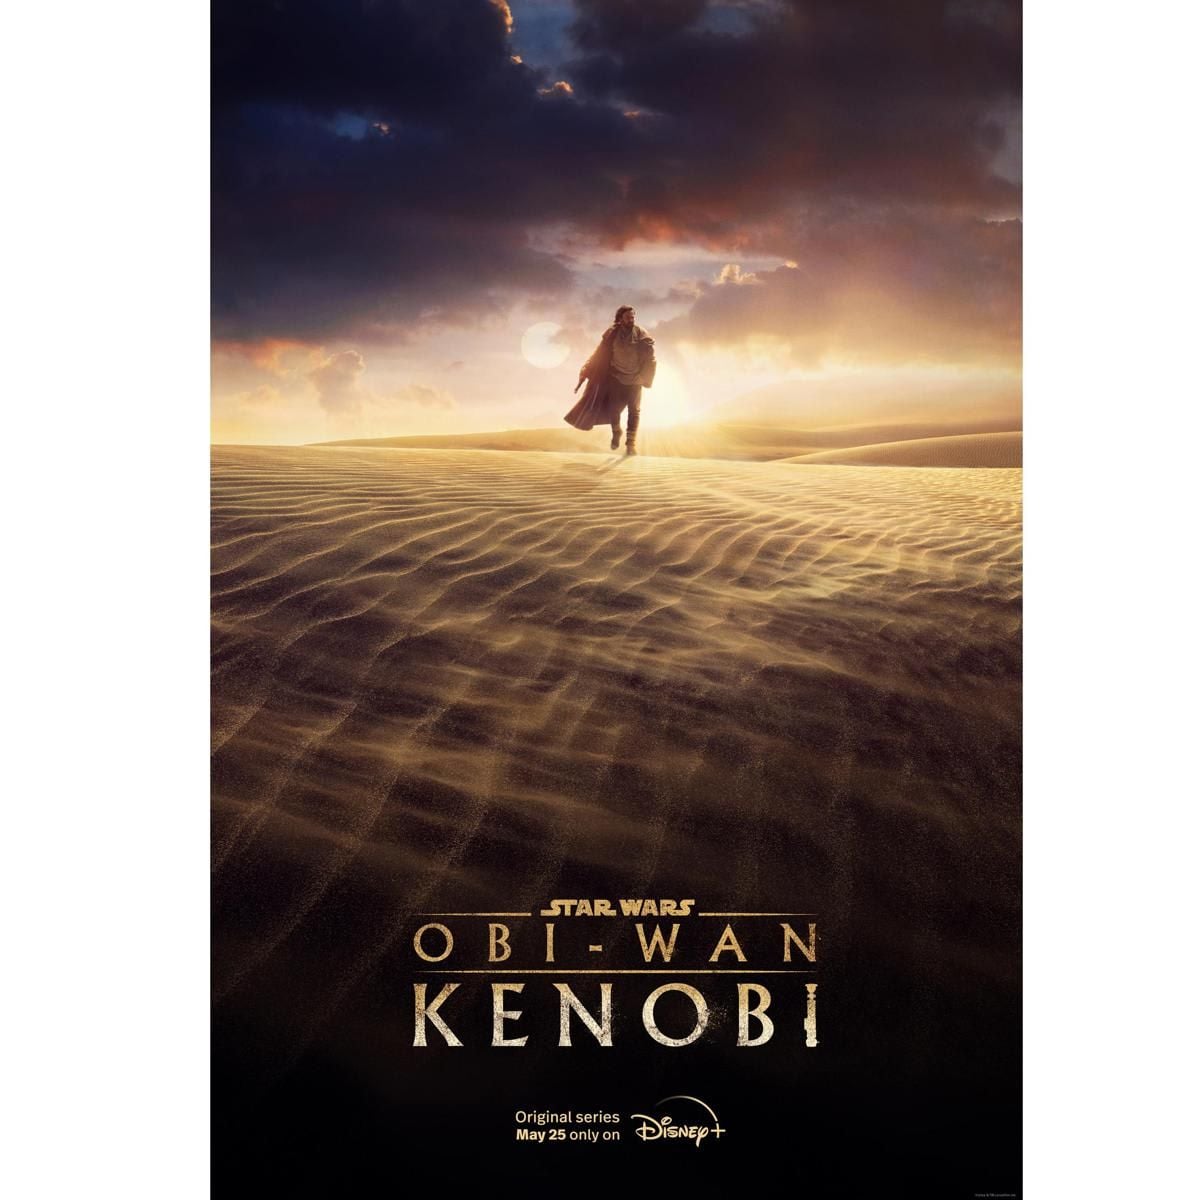 The Obi Wan Kenobi series premieres May 25